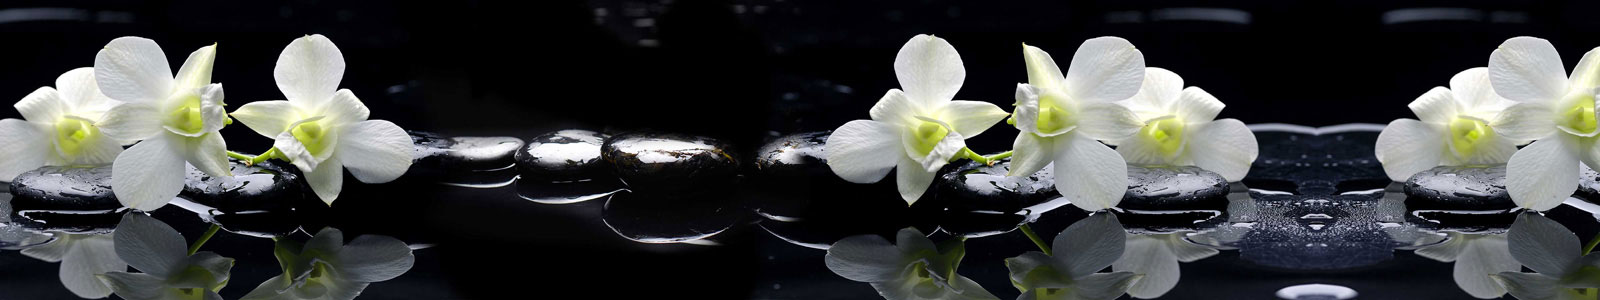 №6037 - Спа камни с белыми орхидеями